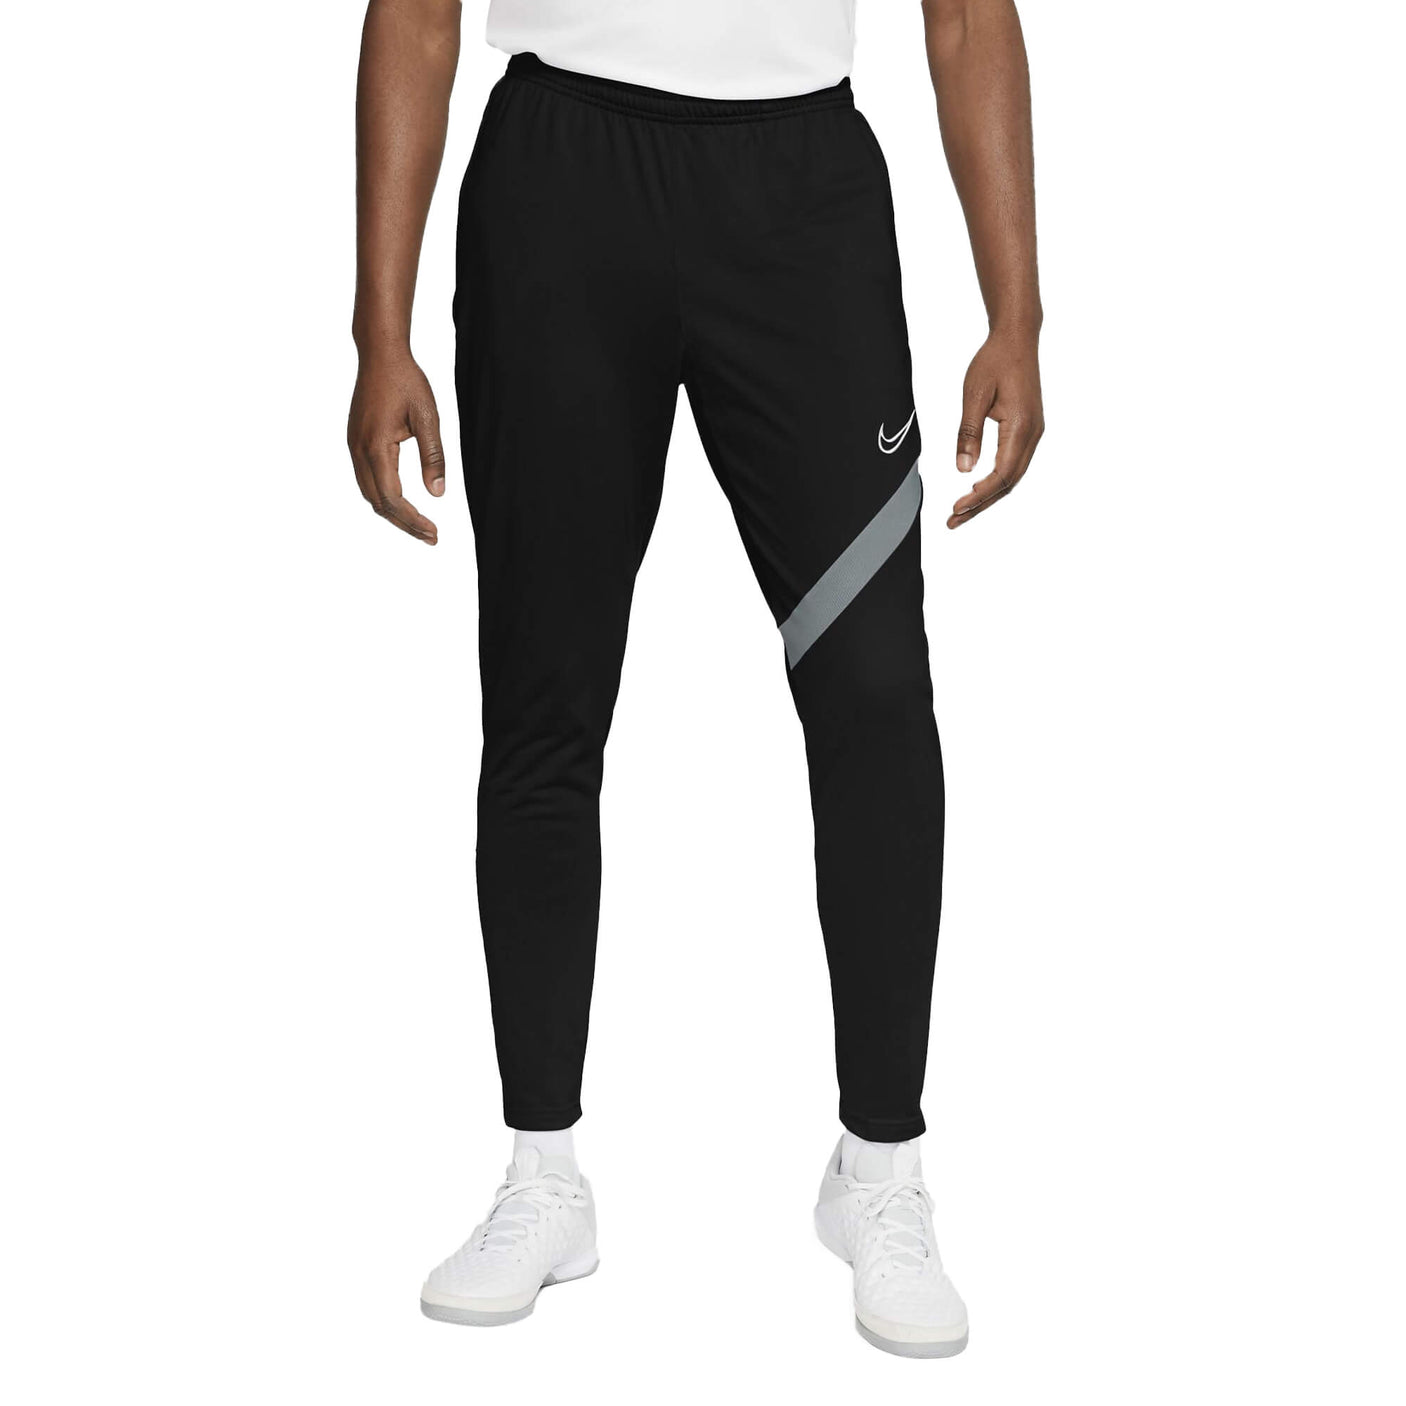 Nike Men's Dri-Fit Pro Academy Knit Pants Black/Smoke Grey Front